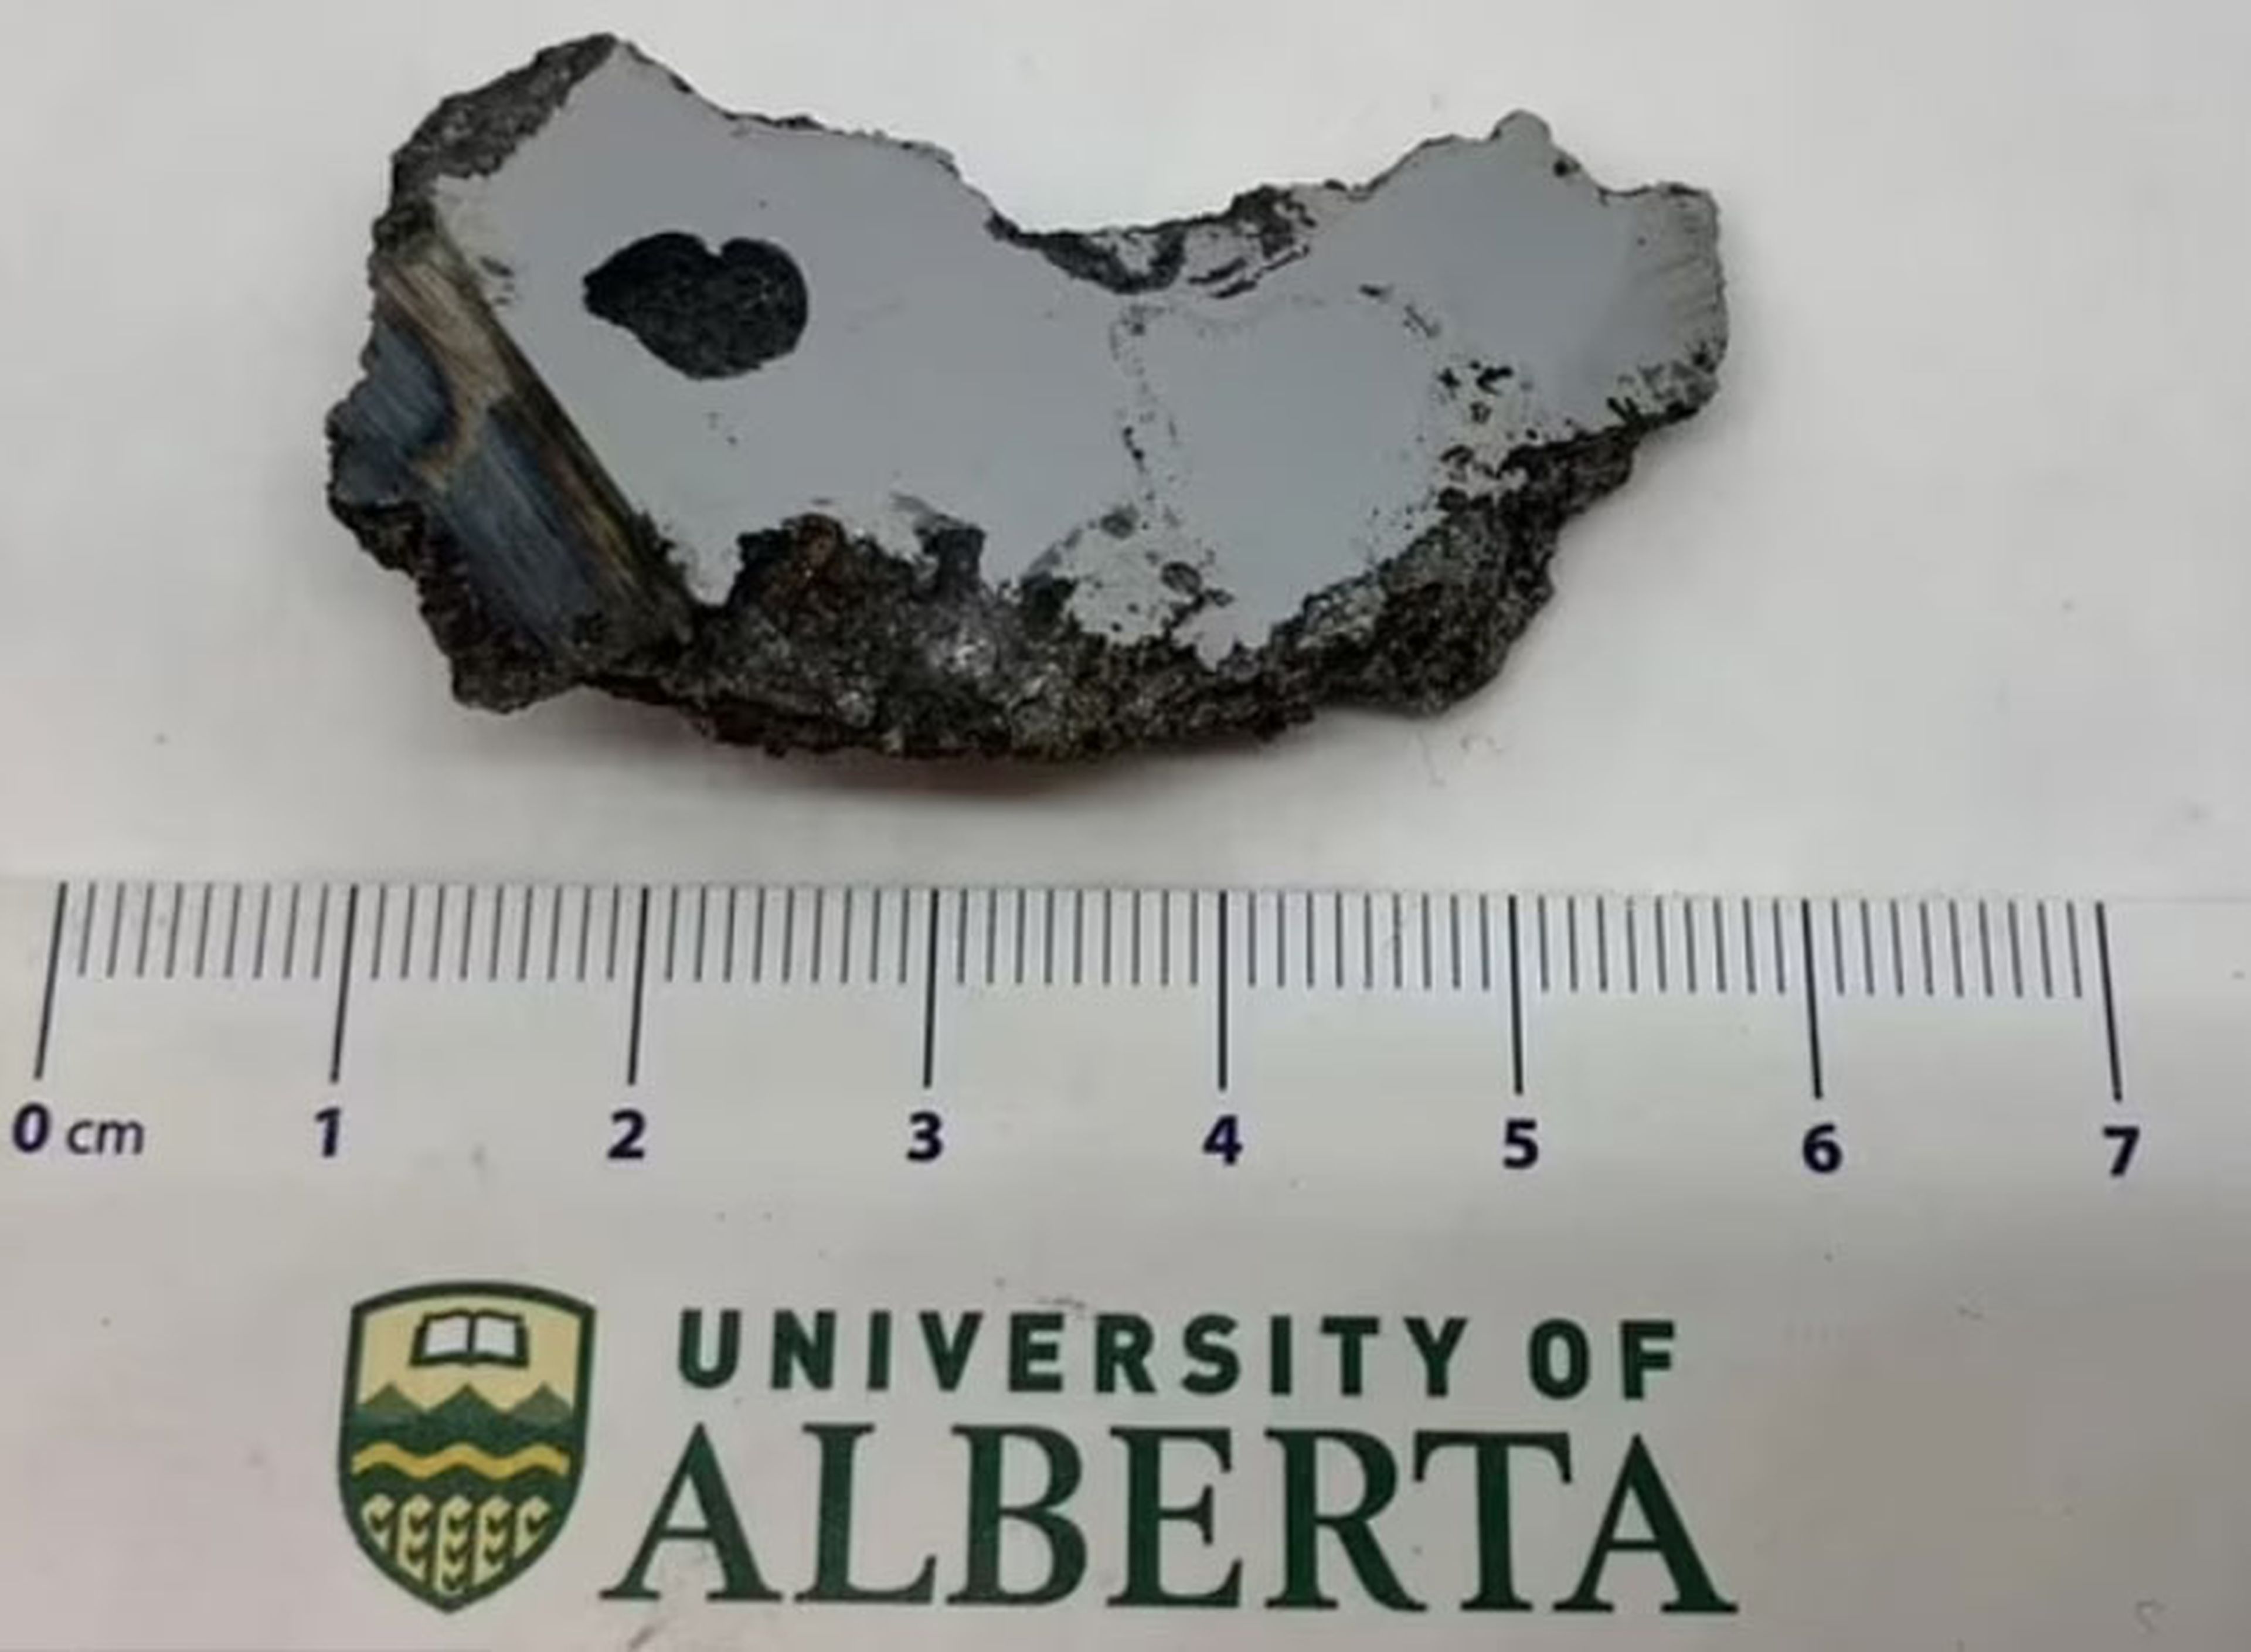 Descubren dos extraños minerales nunca vistos en la Tierra en un meteorito